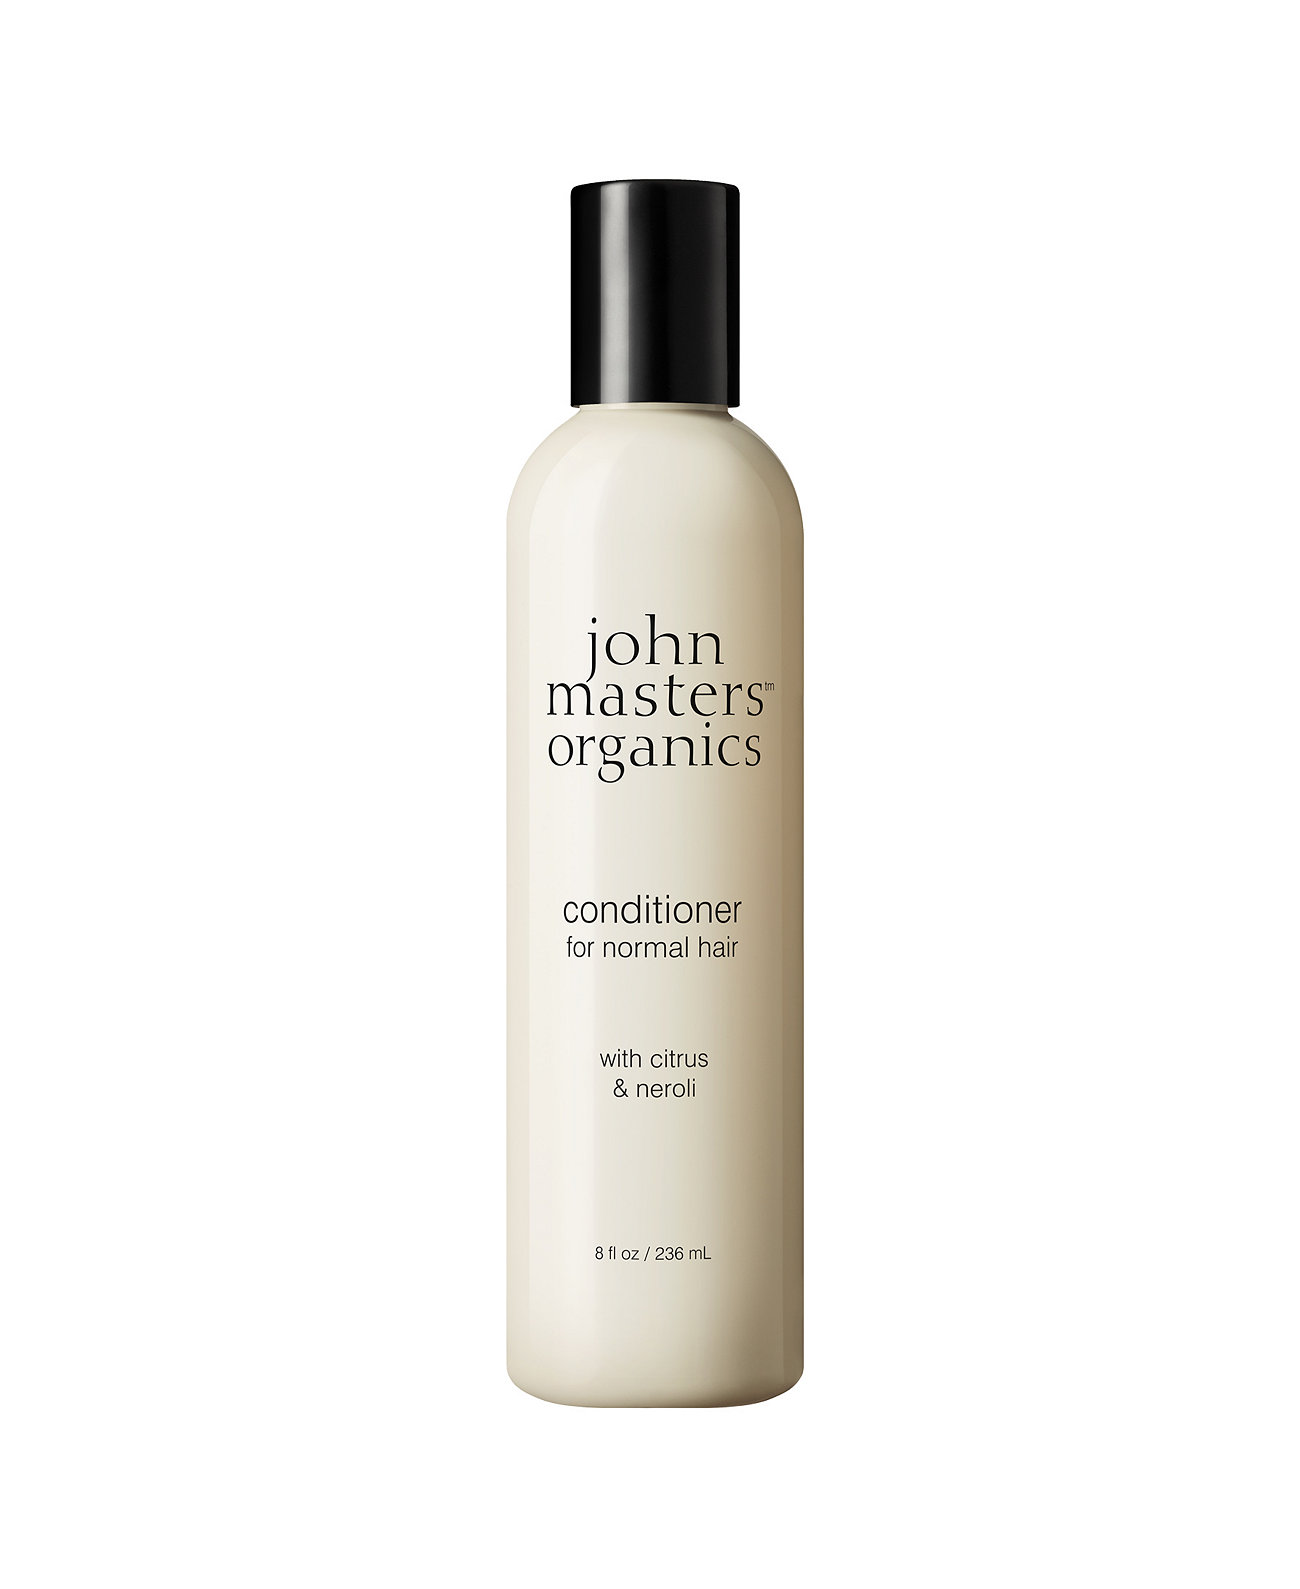 Кондиционер для нормальных волос с цитрусовыми и нероли, 8 унций. John Masters Organics